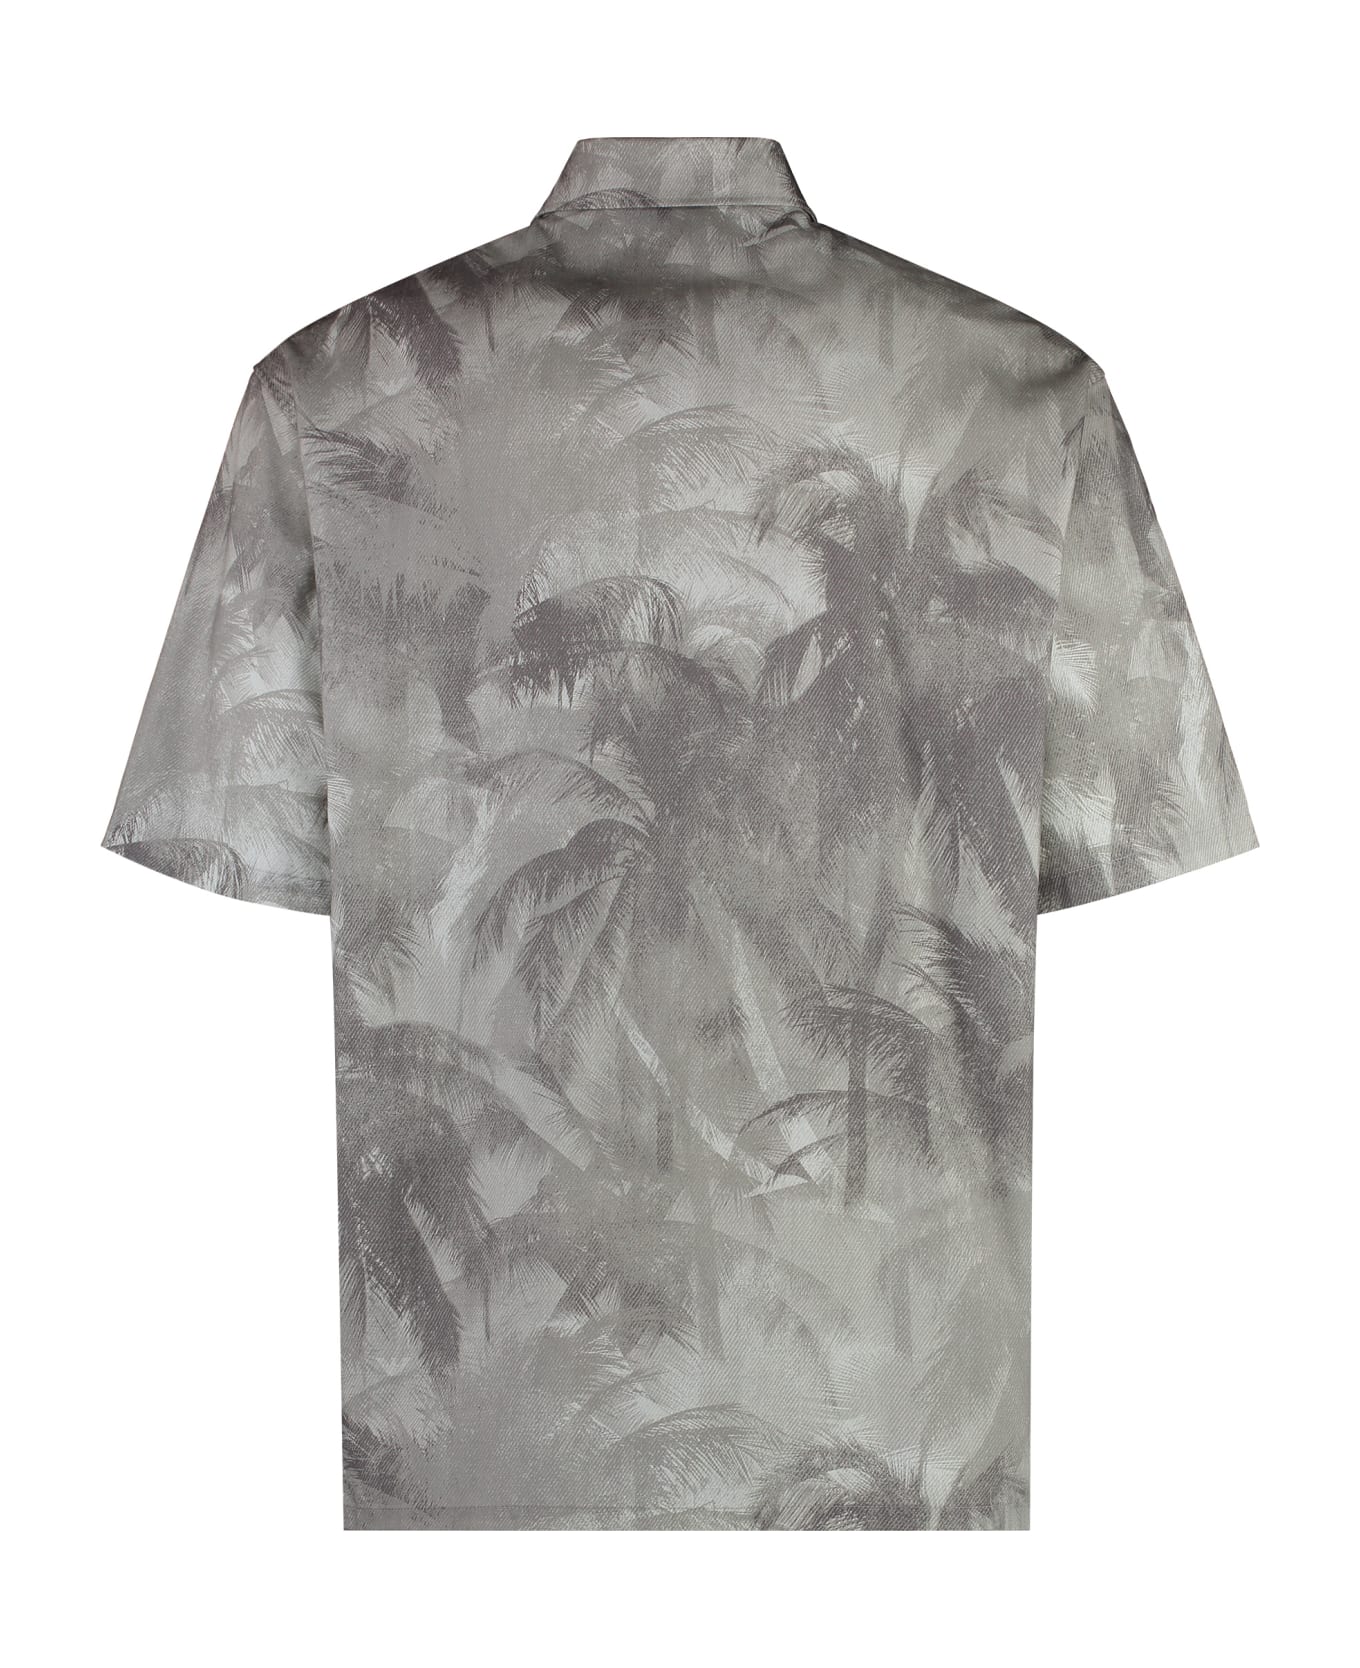 Emporio Armani Printed Short Sleeved Shirt - grey シャツ